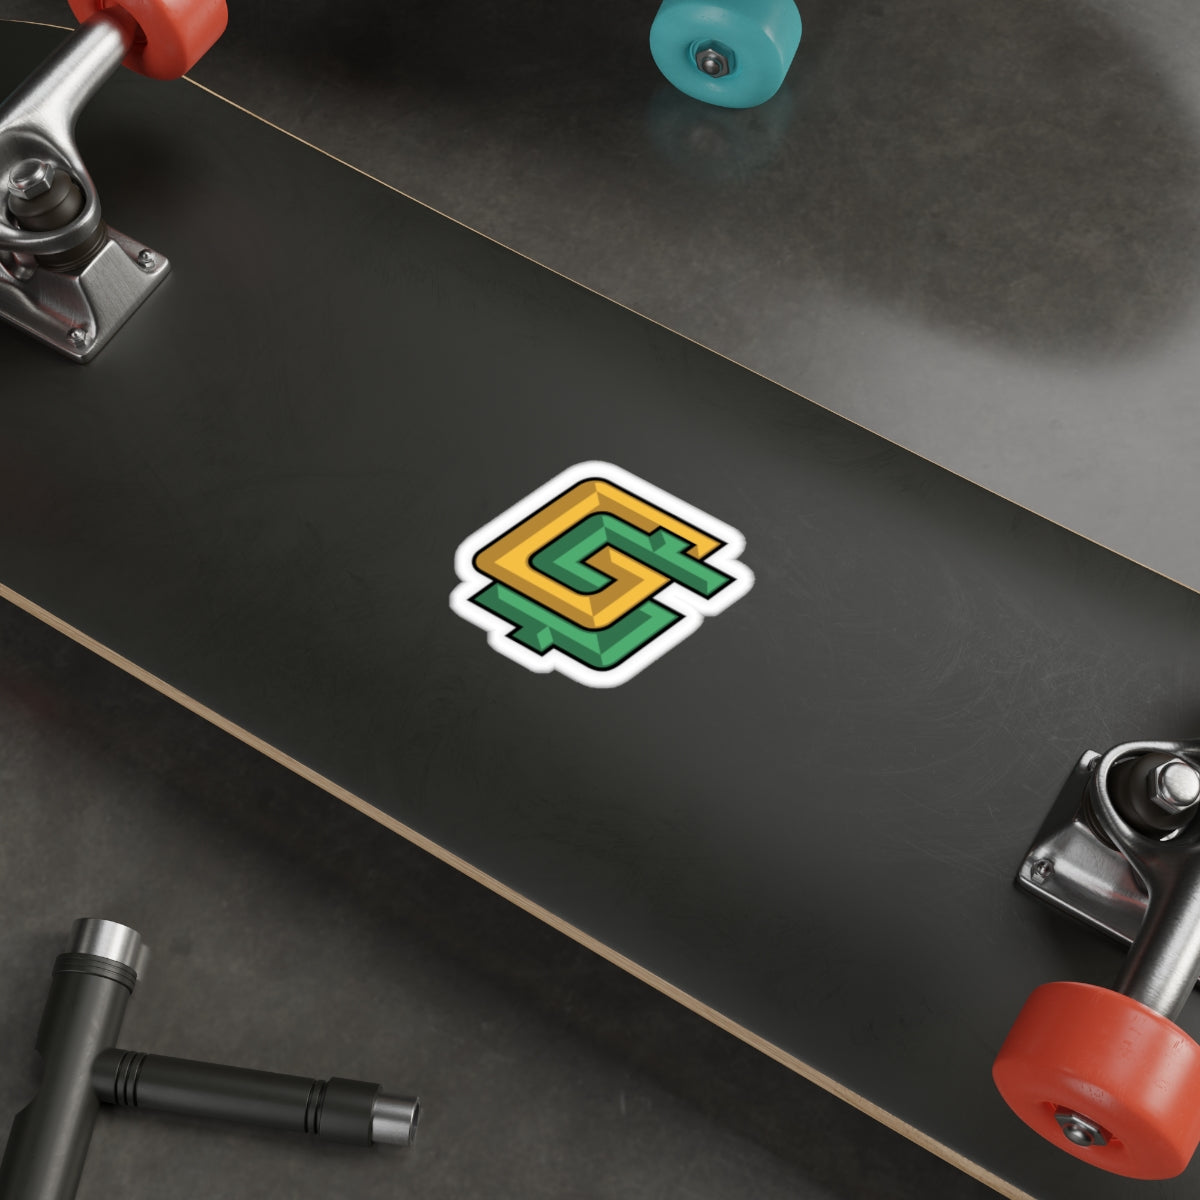 GoldBoys G$ Die-Cut Stickers